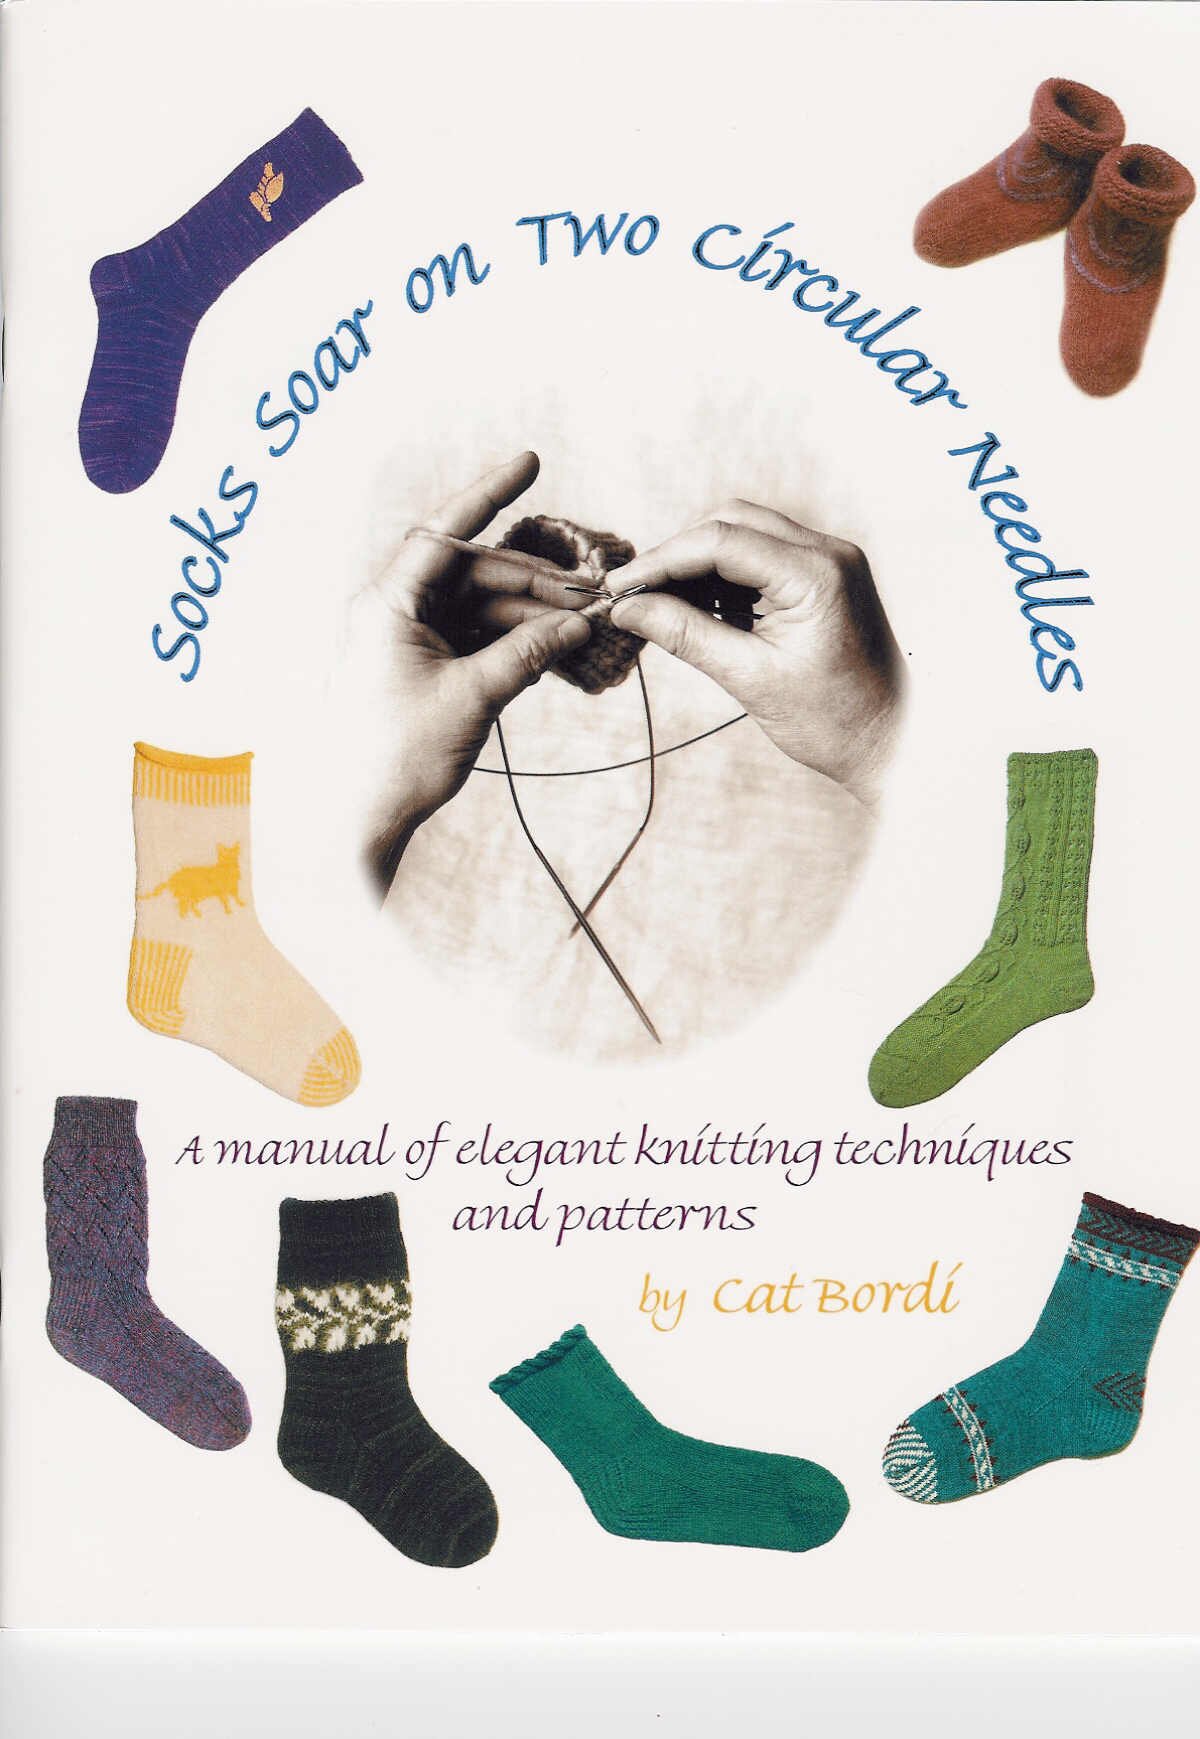 Cat Bordi - Socks Soar on Two Circular Needles